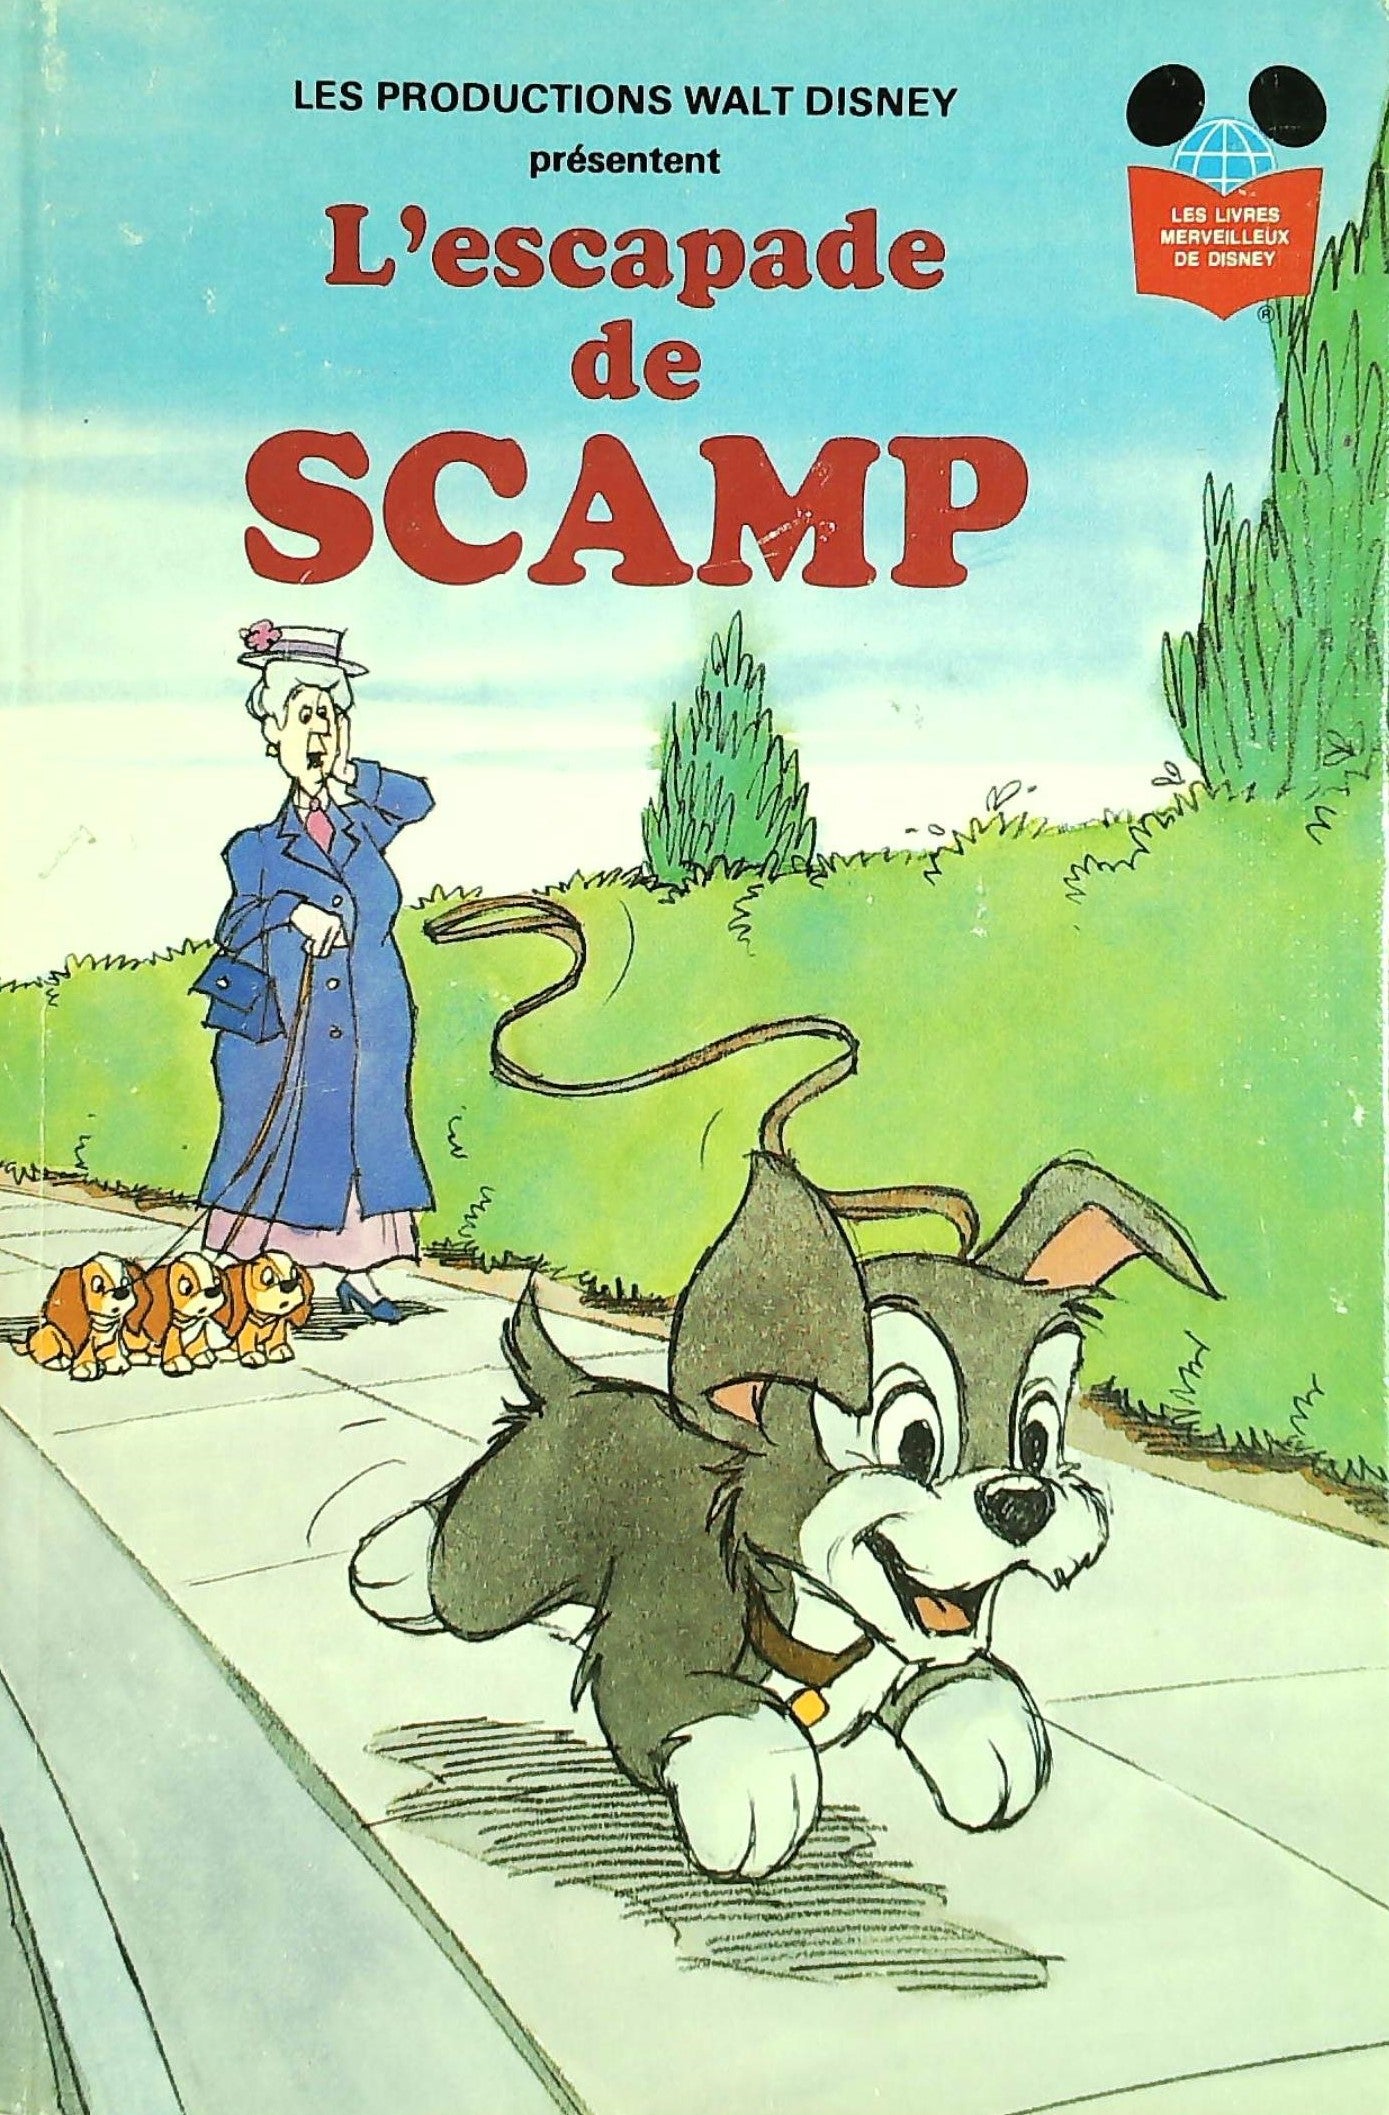 Les livres merveilleux de Disney : L'escapade de Scamp